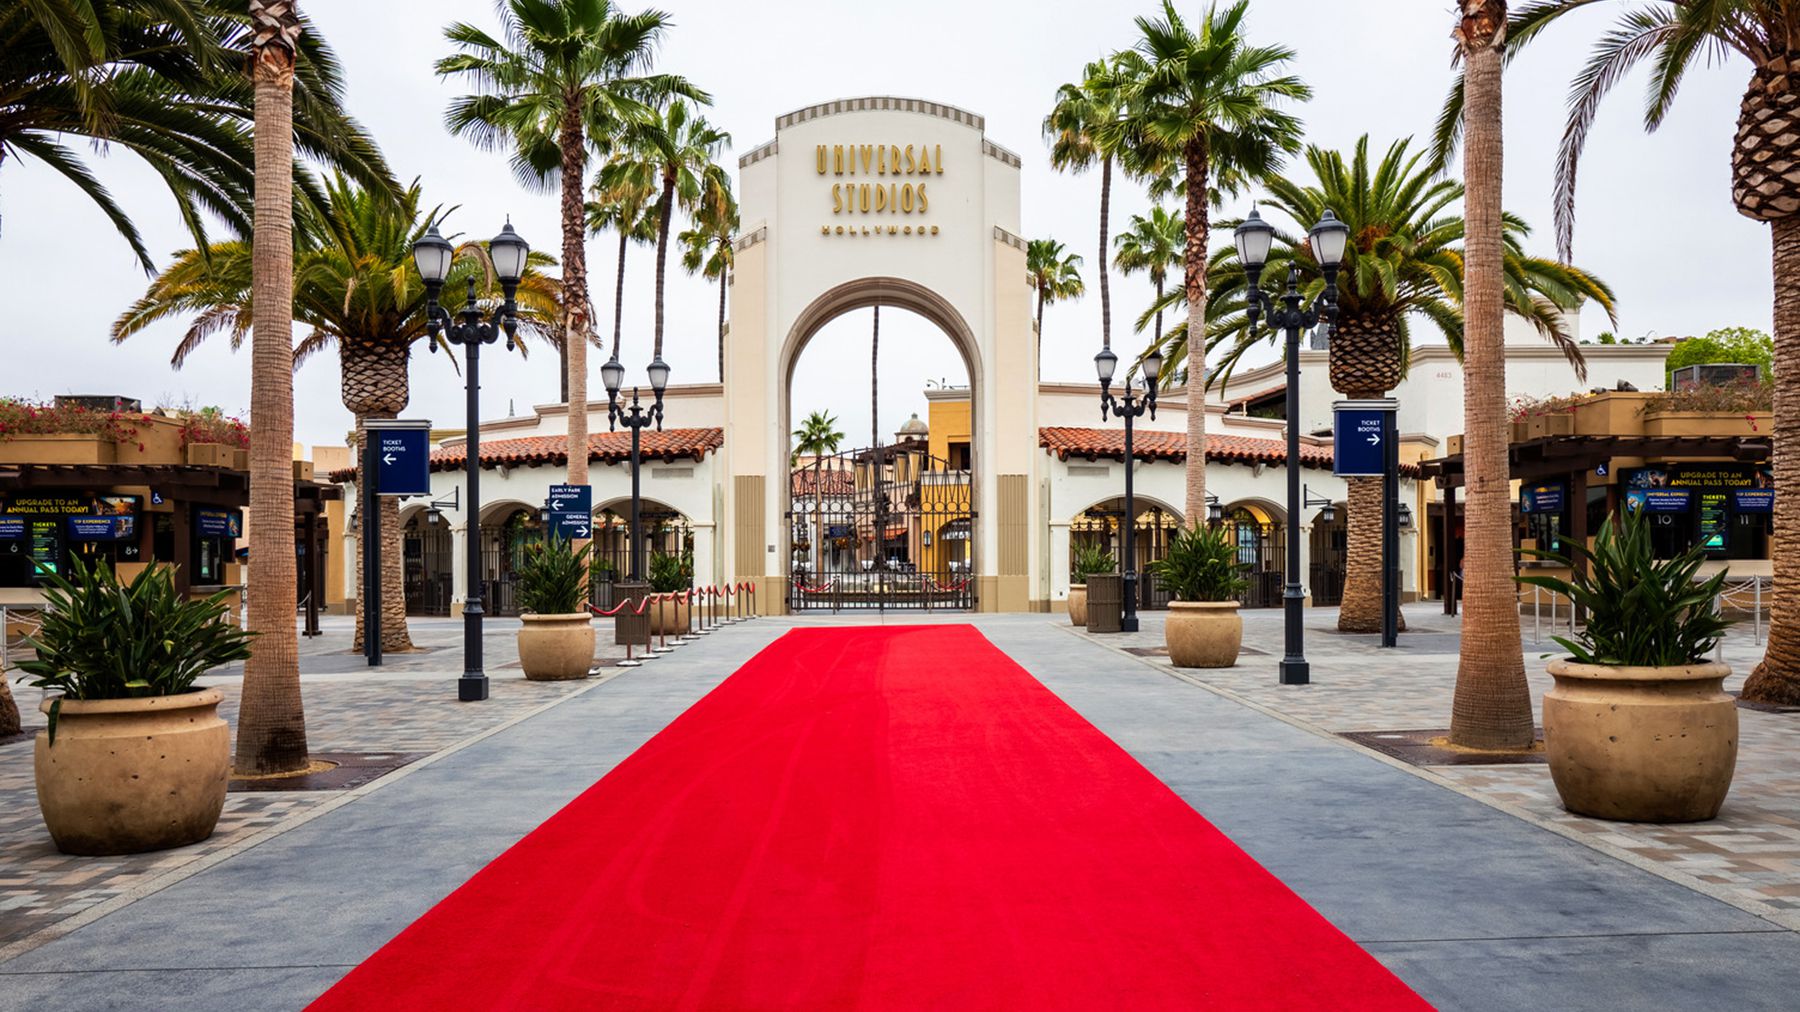 Cổng dẫn vào Universal Studio Hollywood